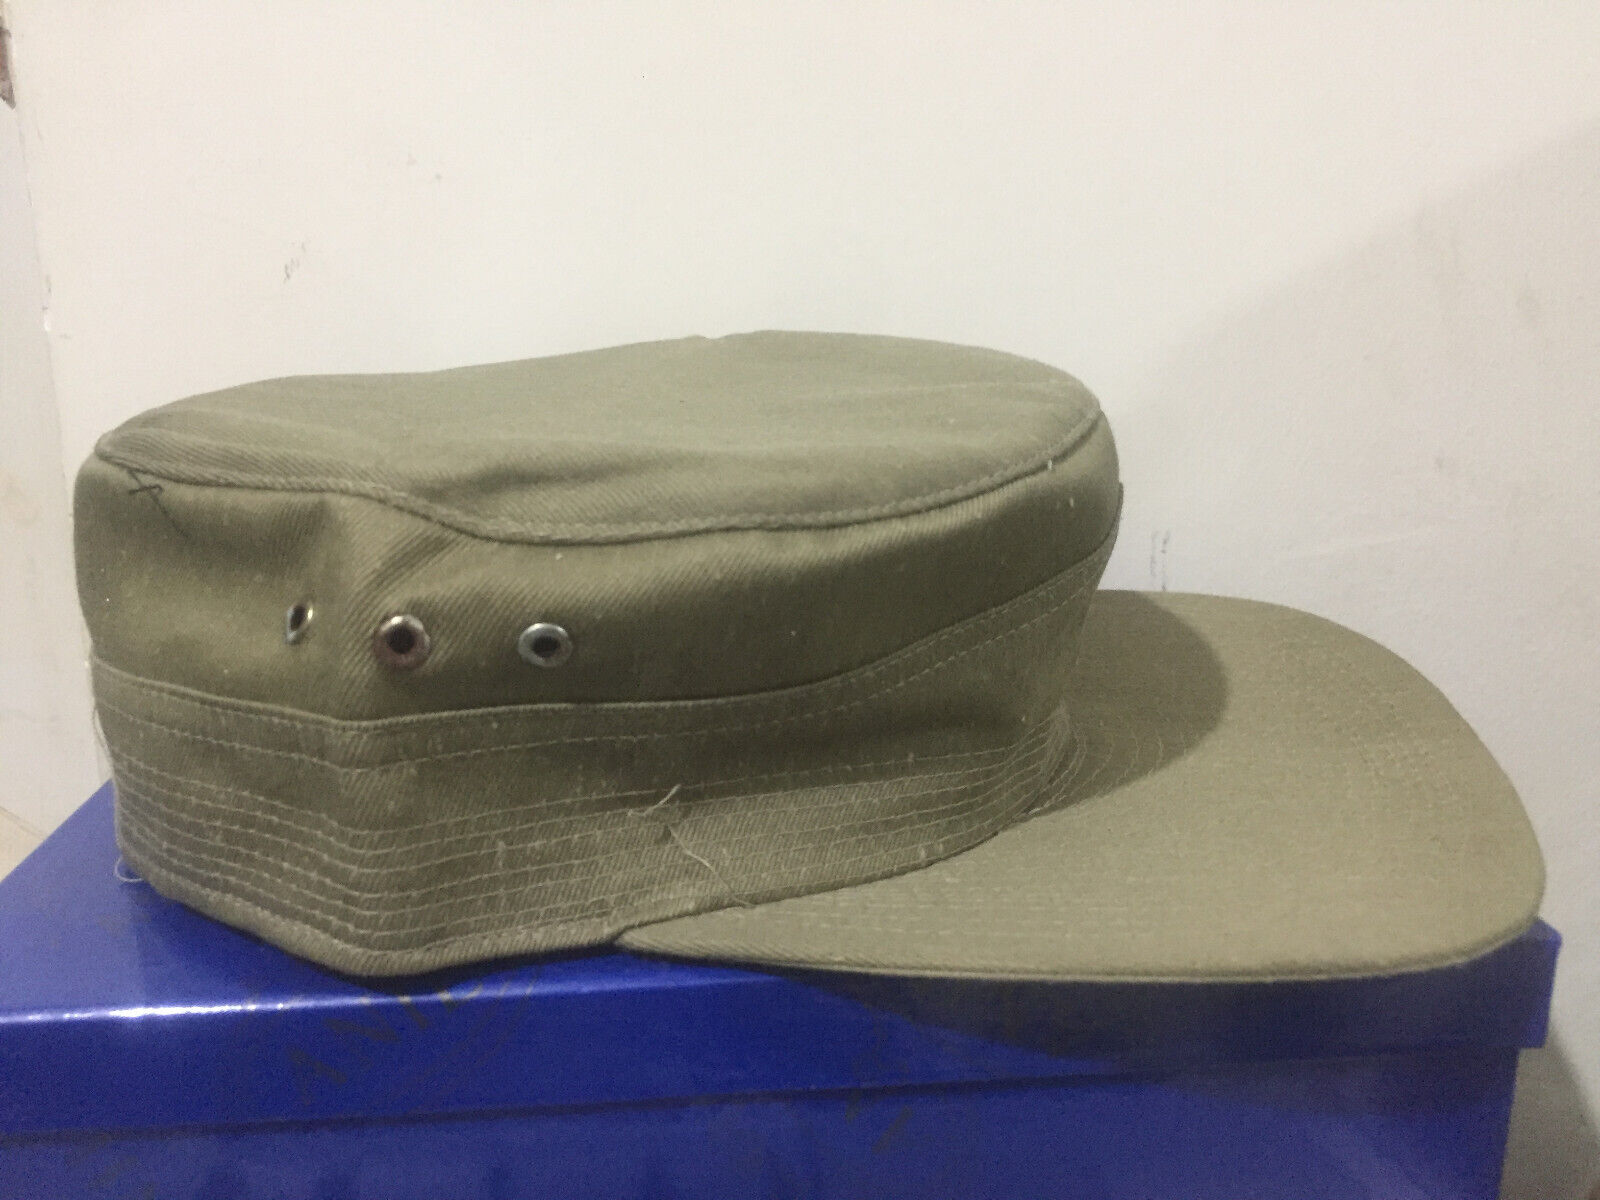 RARE* Persian khaki Army hat, Iran-Iraq war 1980s Gulf War